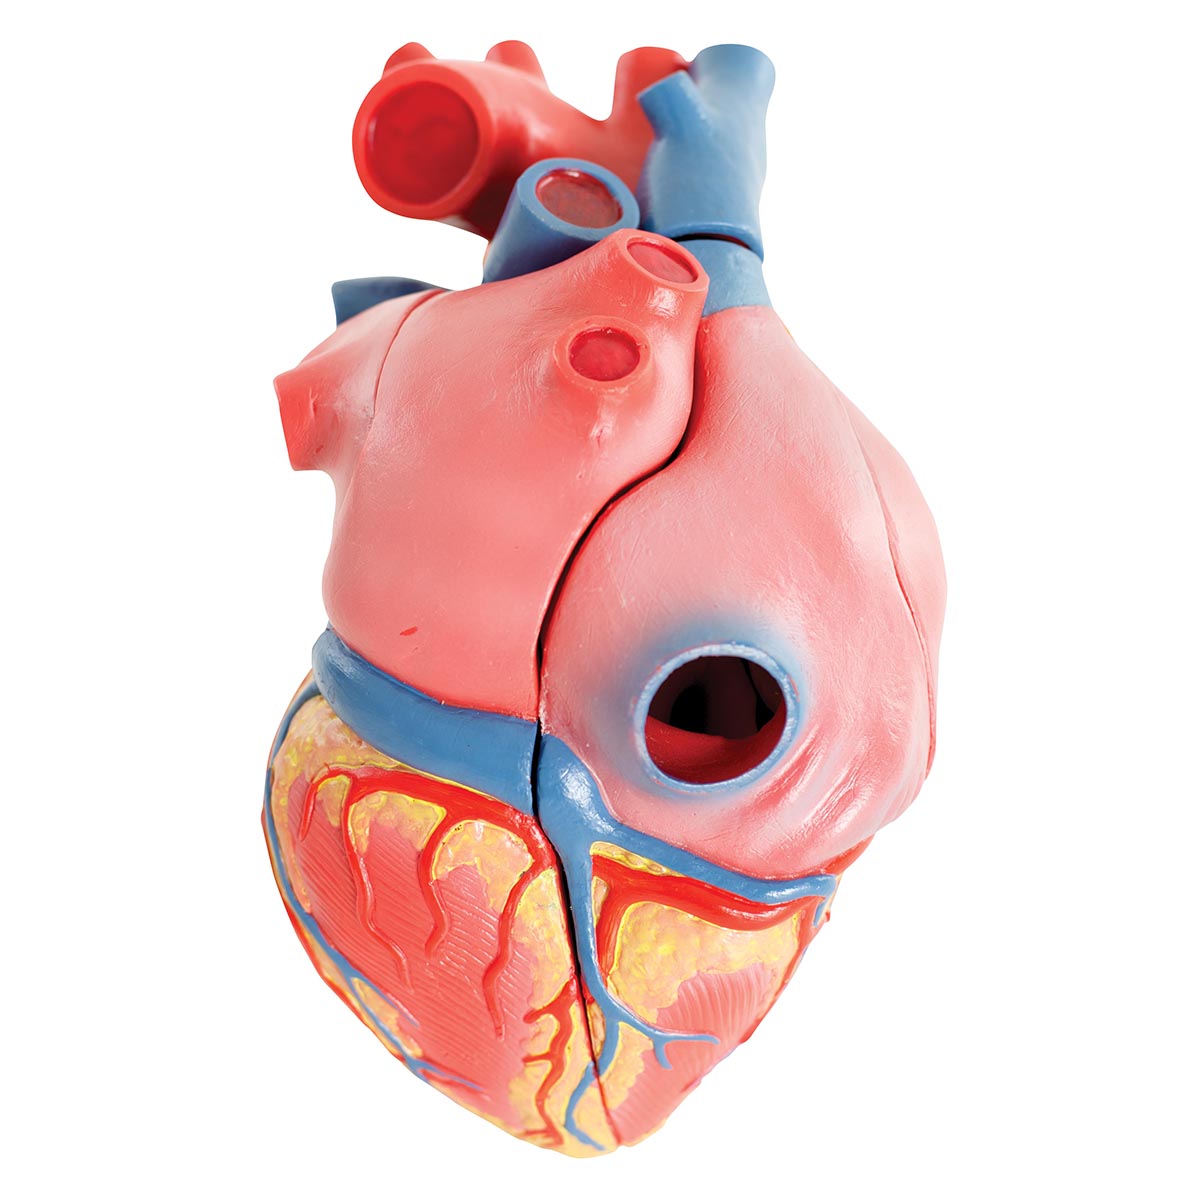 Hjärtmodell med fokus på de 4 hjärtklaffarna och gips efter ett riktigt hjärta